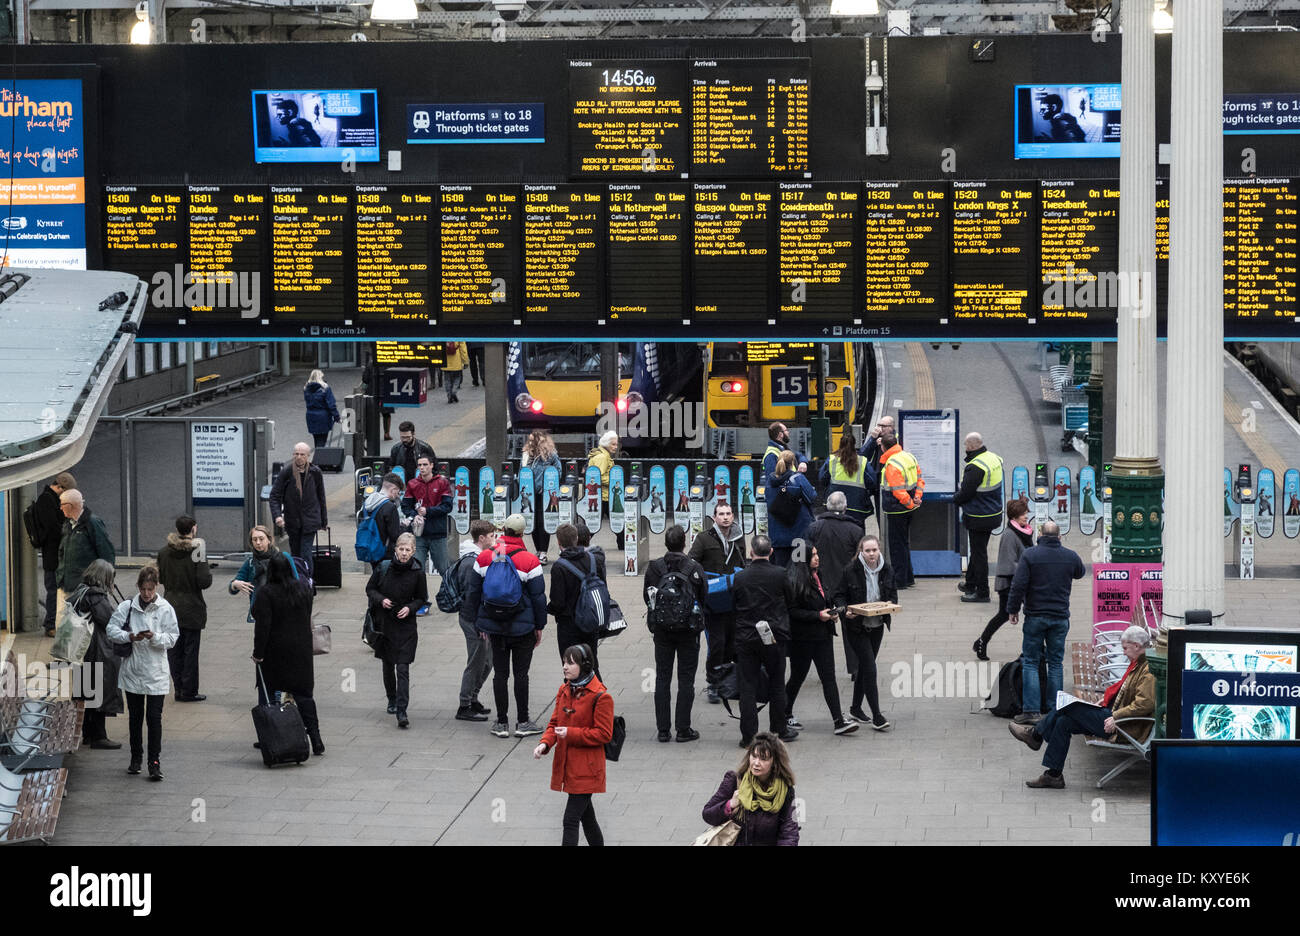 Innenansicht der Waverley Station in Edinburgh, Schottland, Vereinigtes Königreich Stockfoto